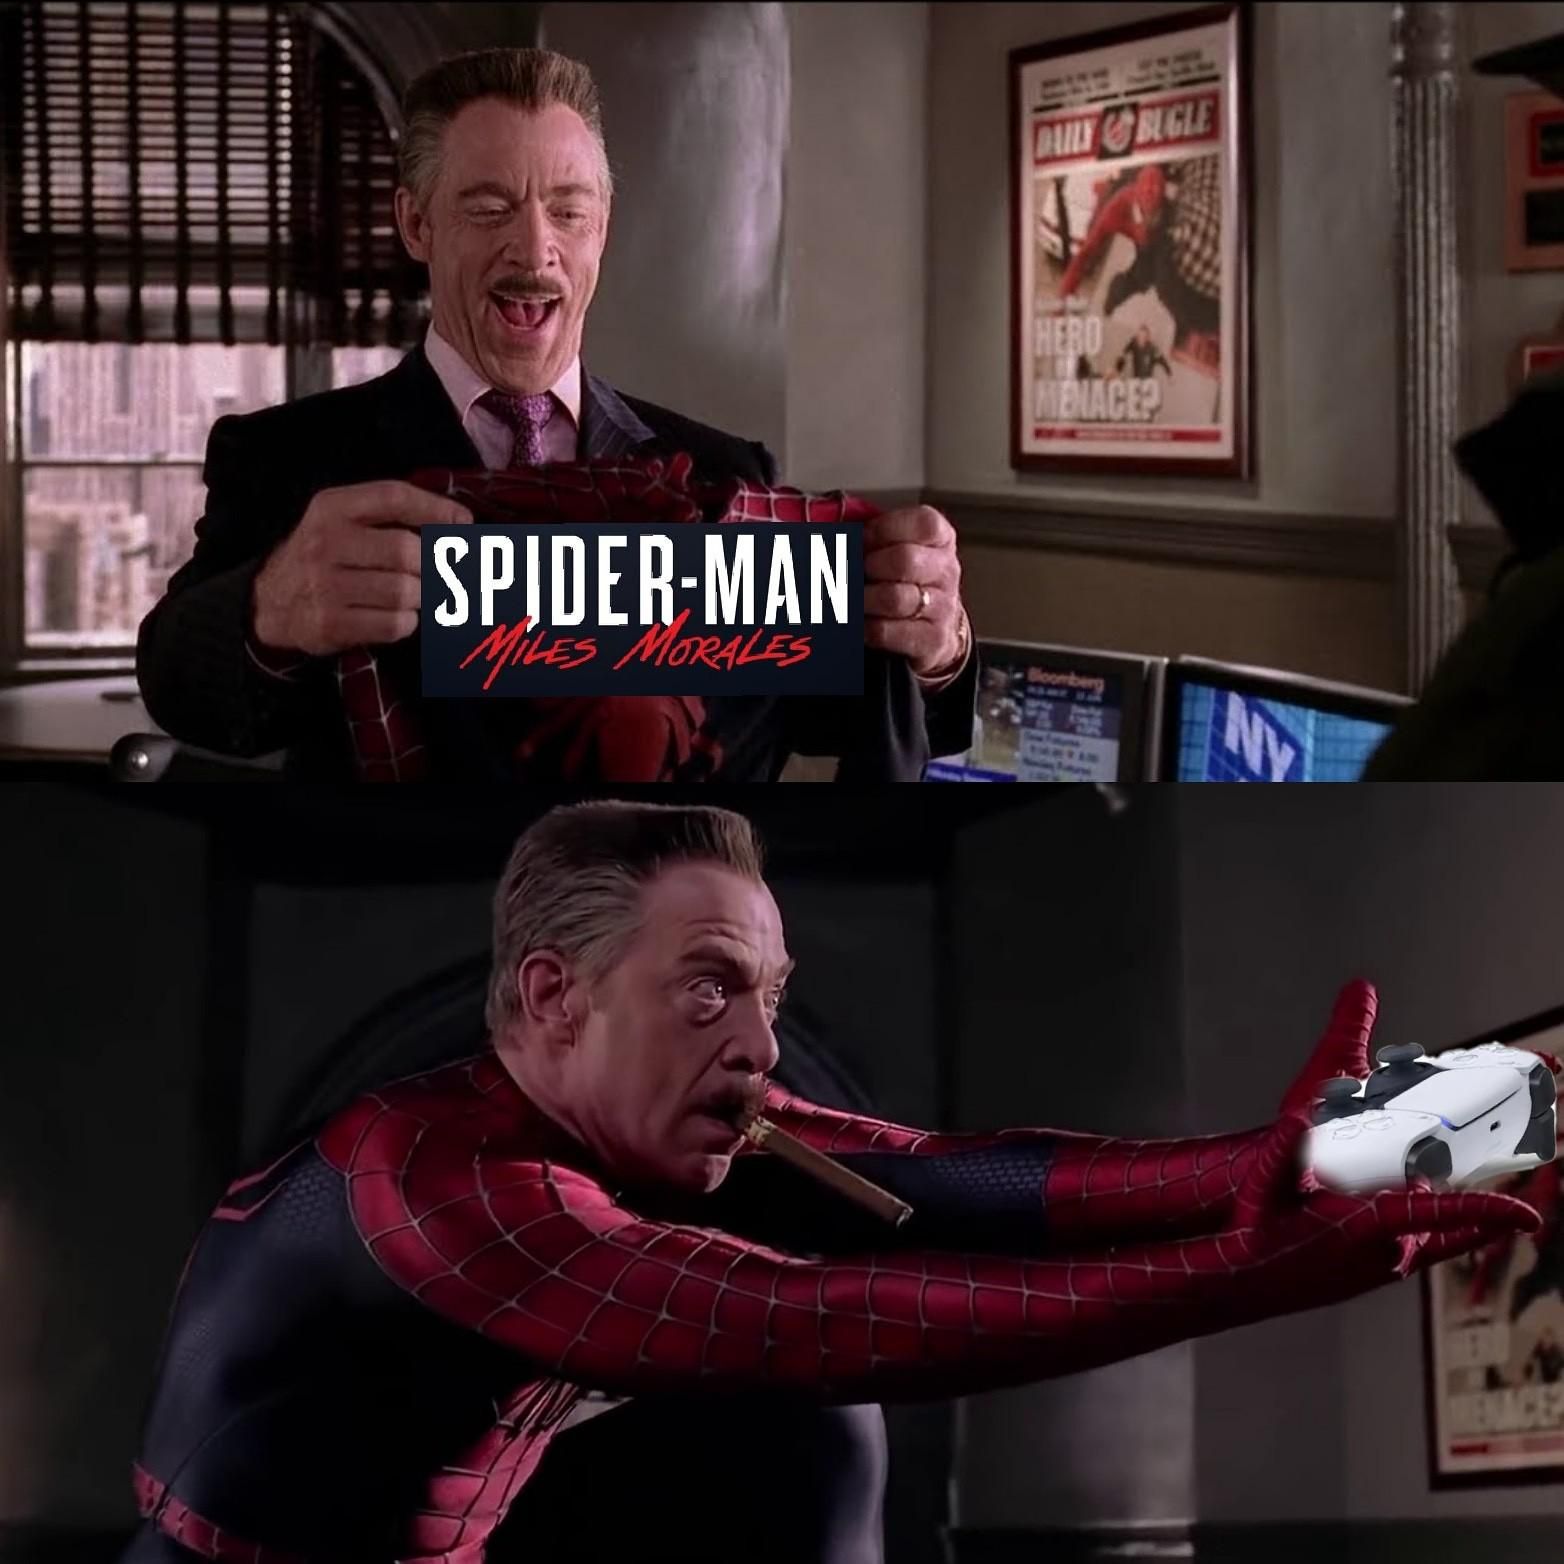 spider-man meme